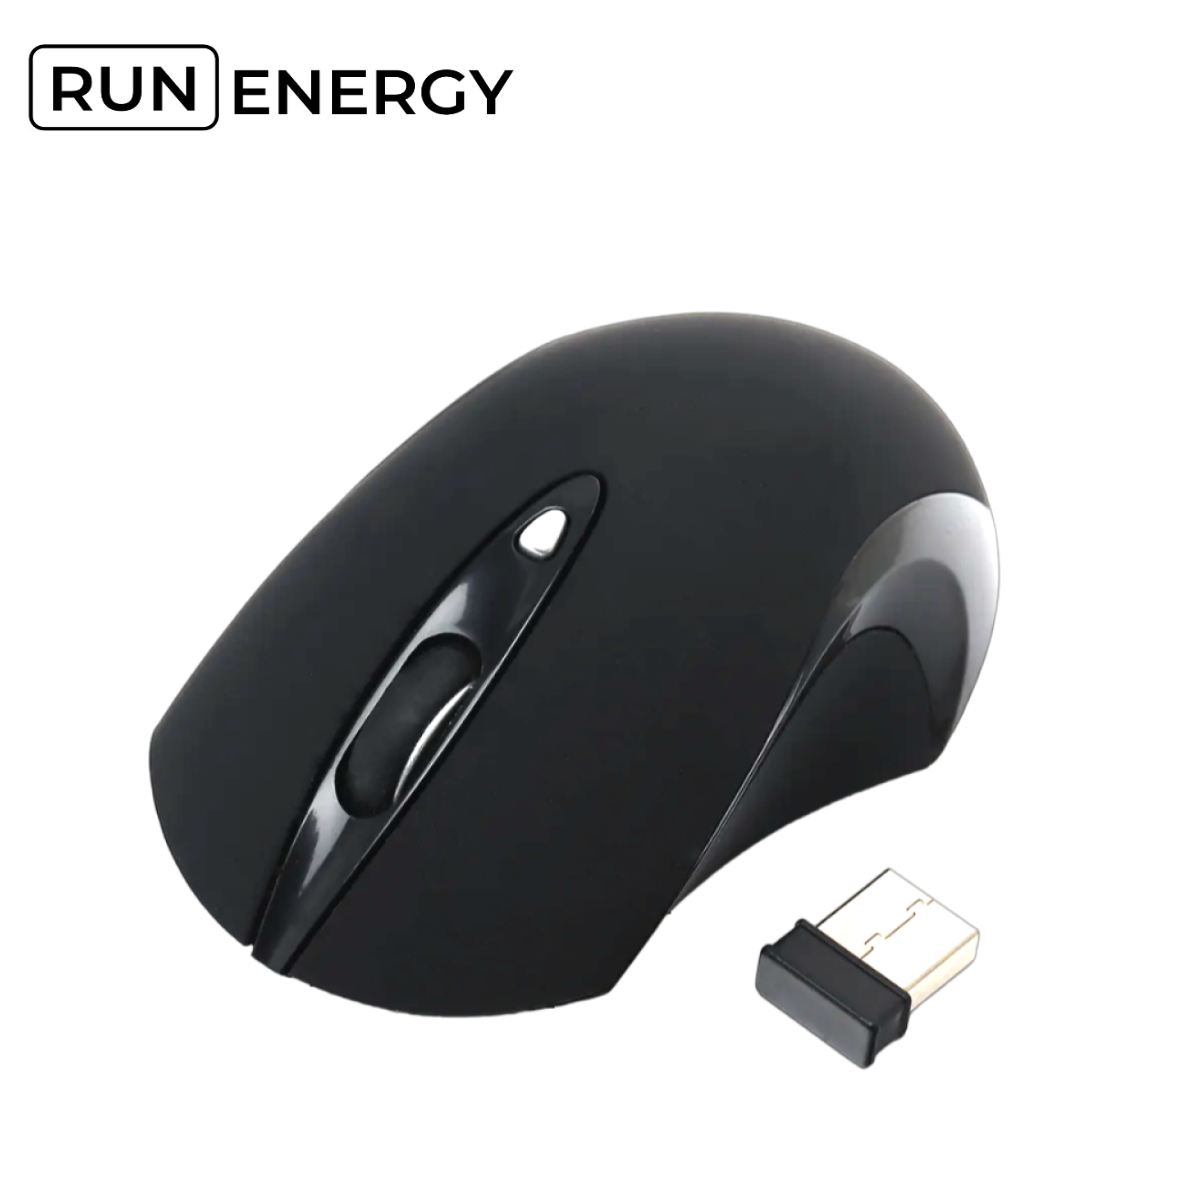 Мышь Run Energy для компьютера/ноутбука беспроводная, бесшумная (G-189)